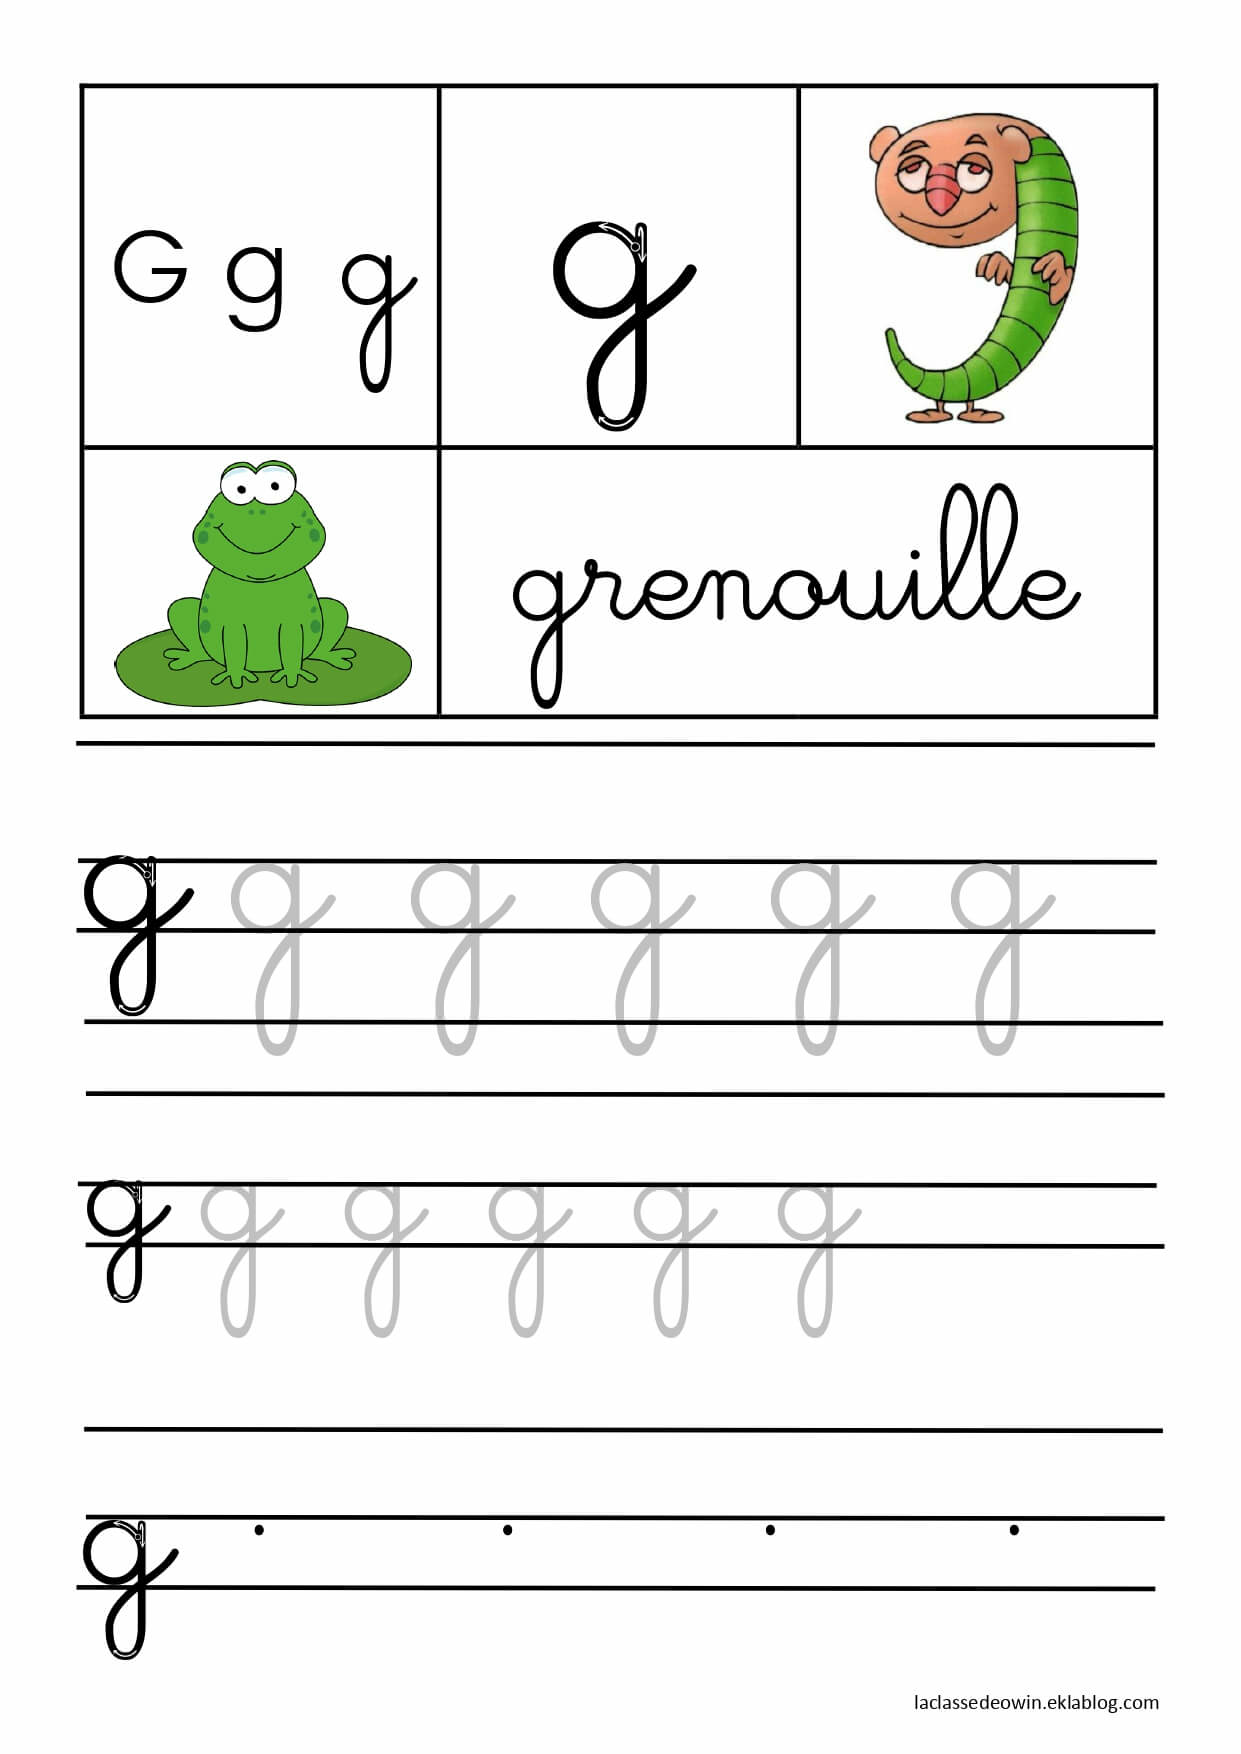   Lettre G pour grenouille, écriture cursive GS 